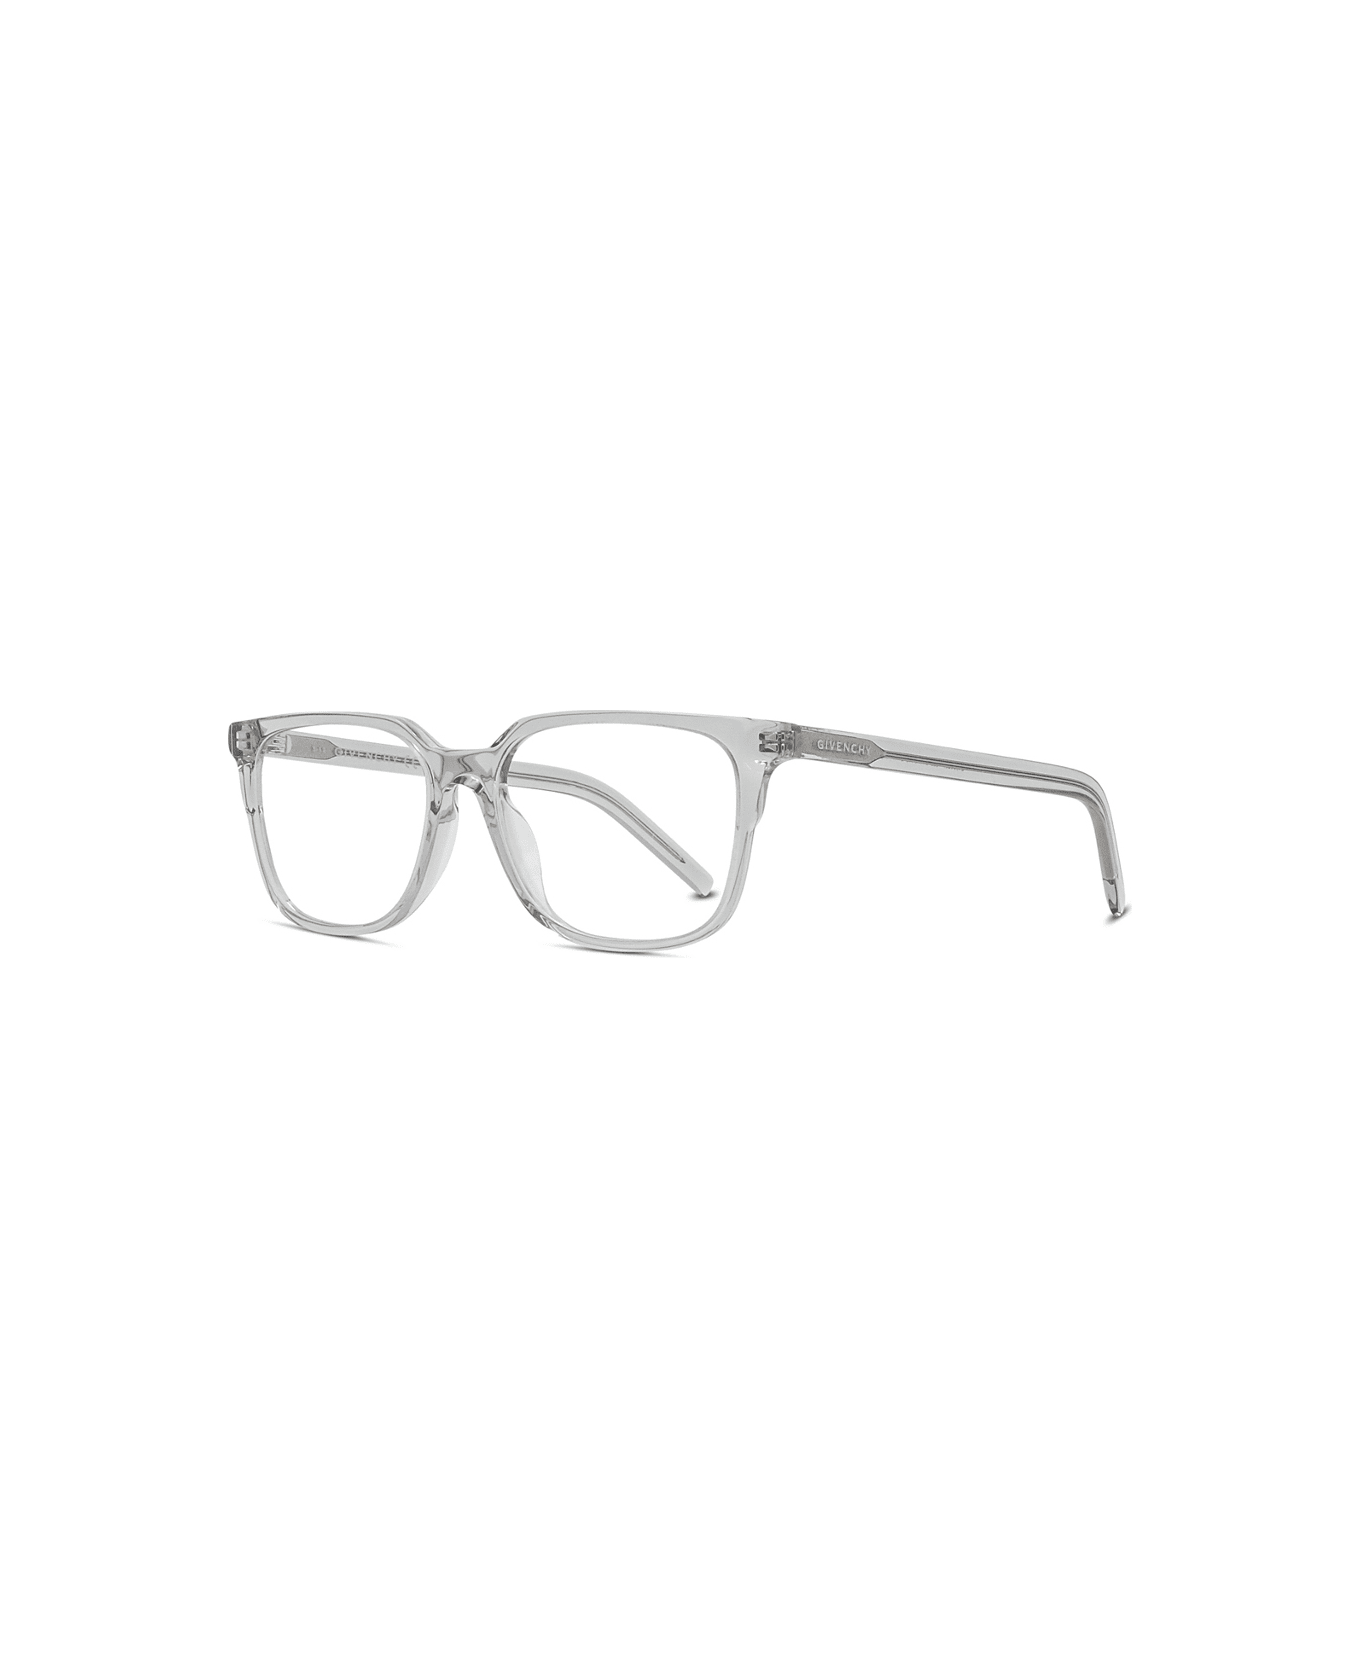 Givenchy Eyewear Gv50020i 020 Glasses アイウェア